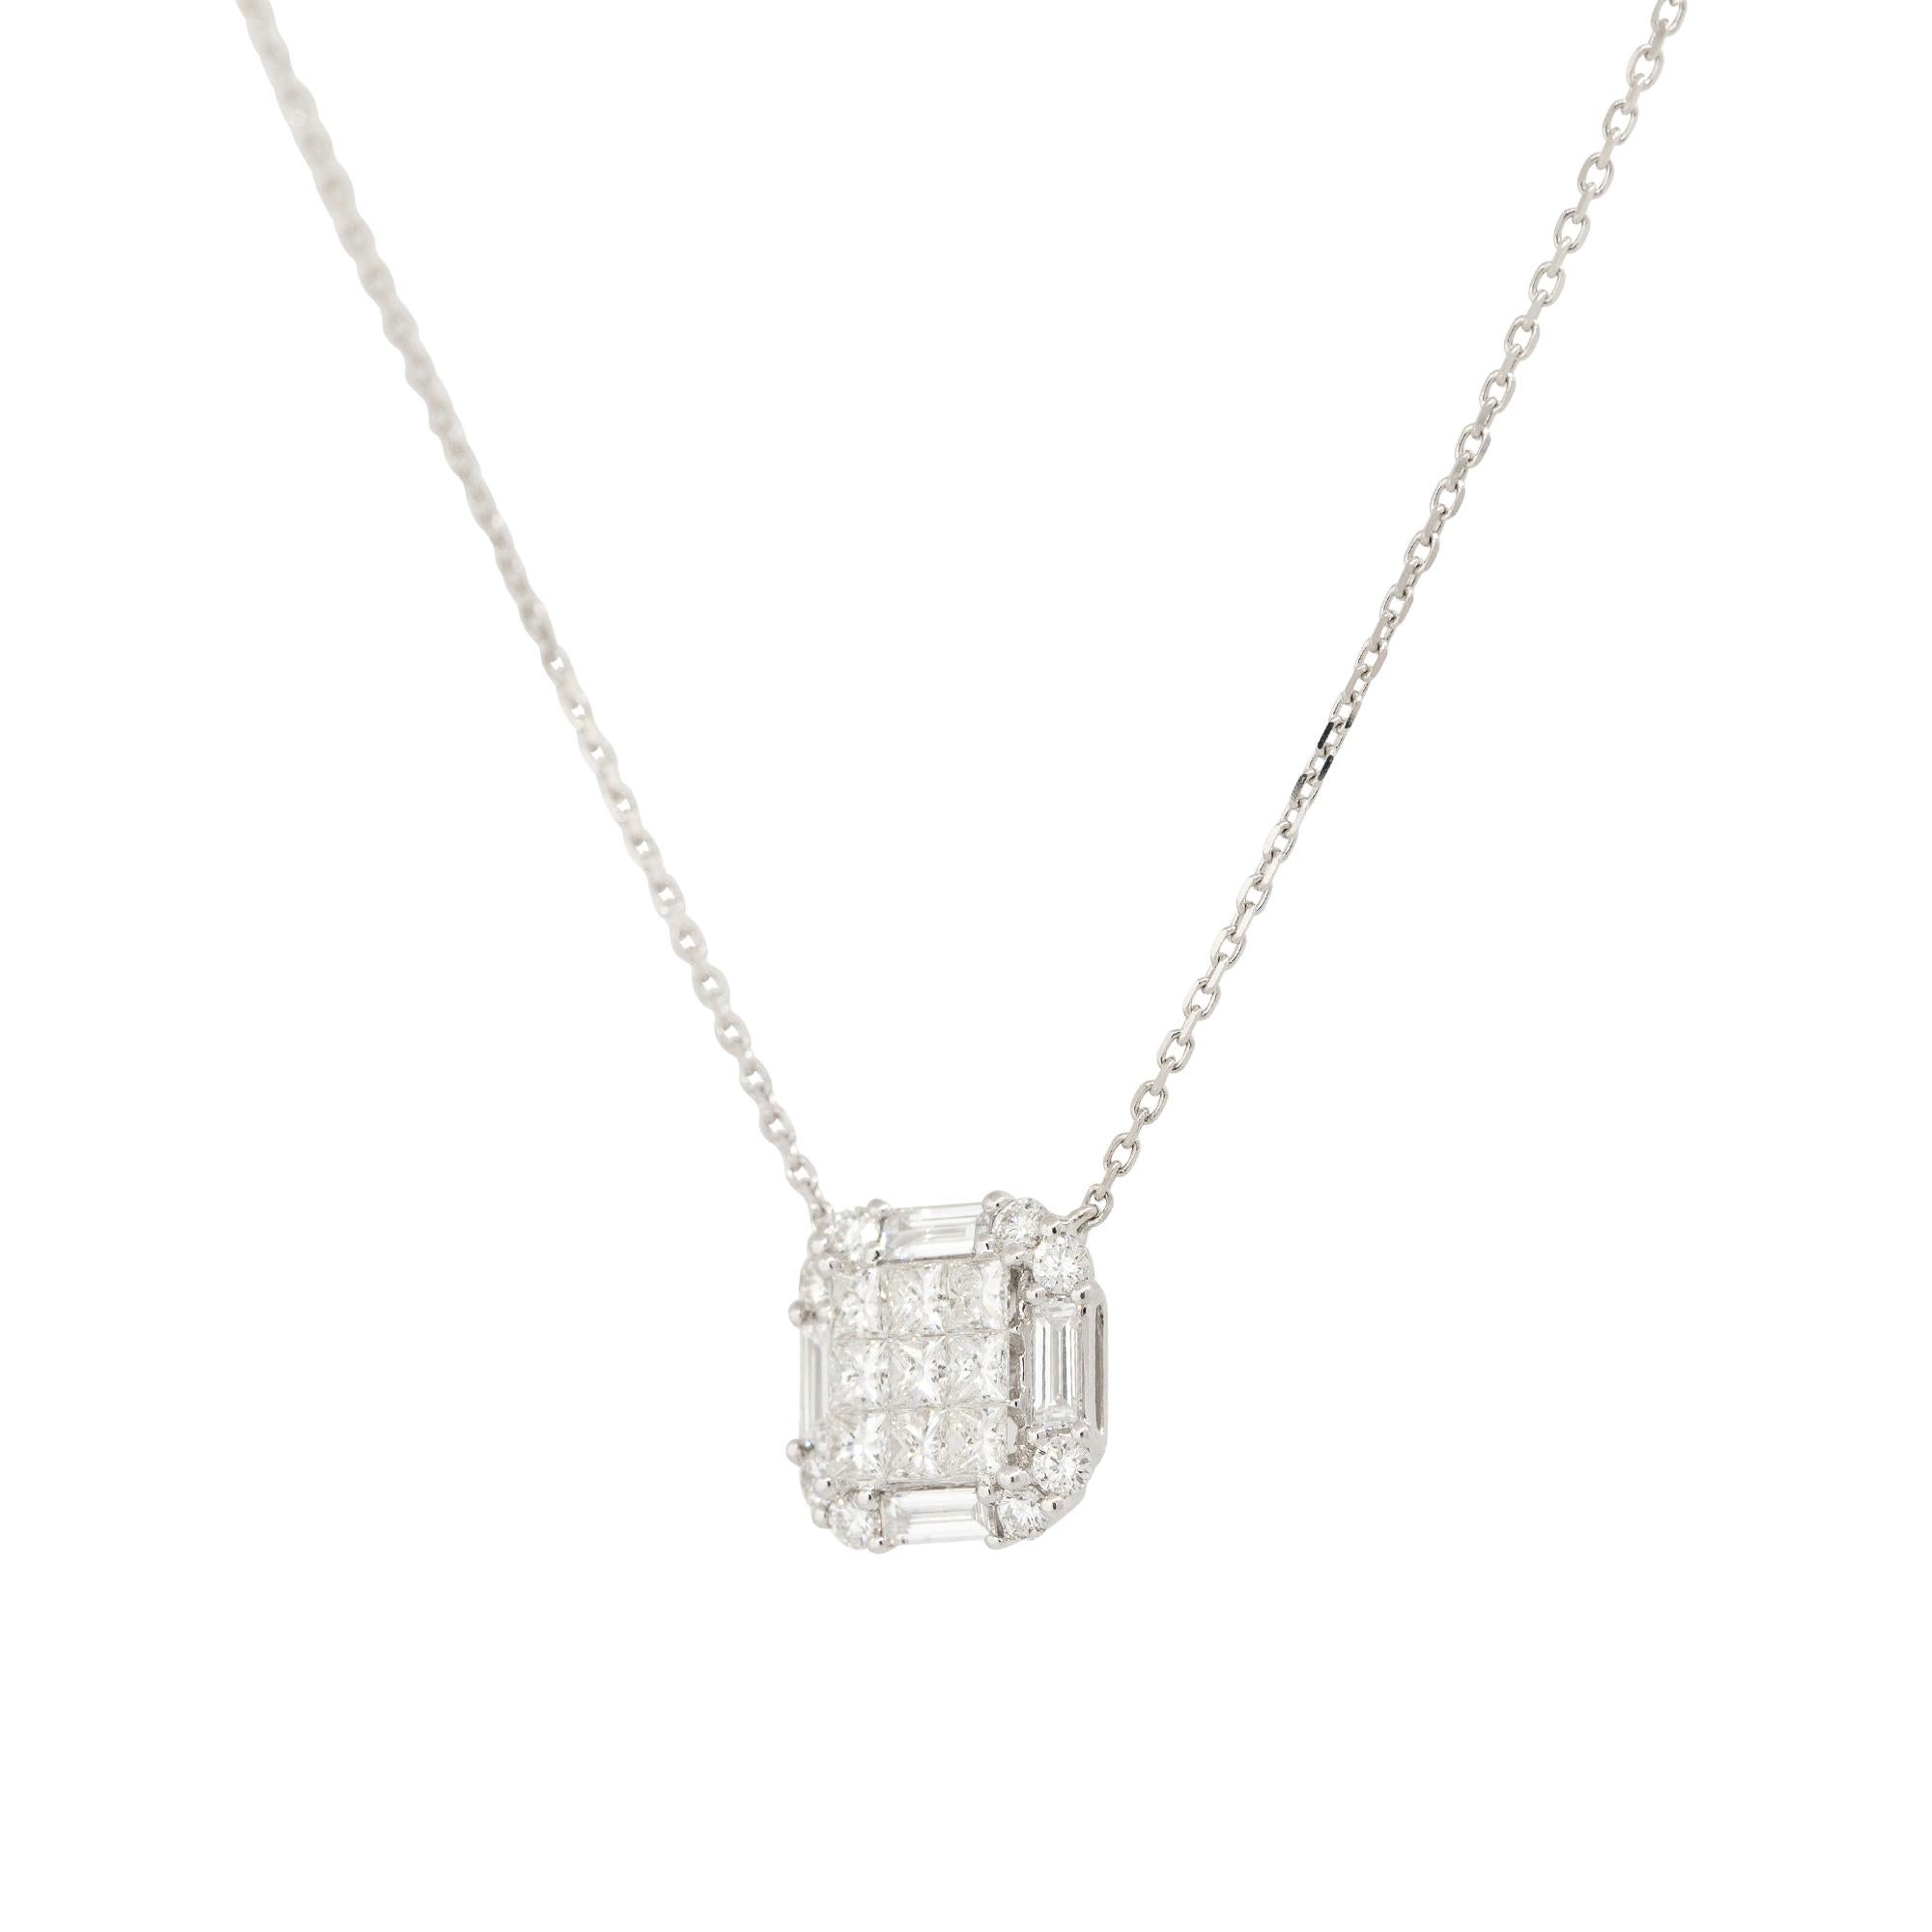 Round Cut 1.87 Carat Princess Cut Diamond Pendant Necklace 18 Karat In Stock For Sale